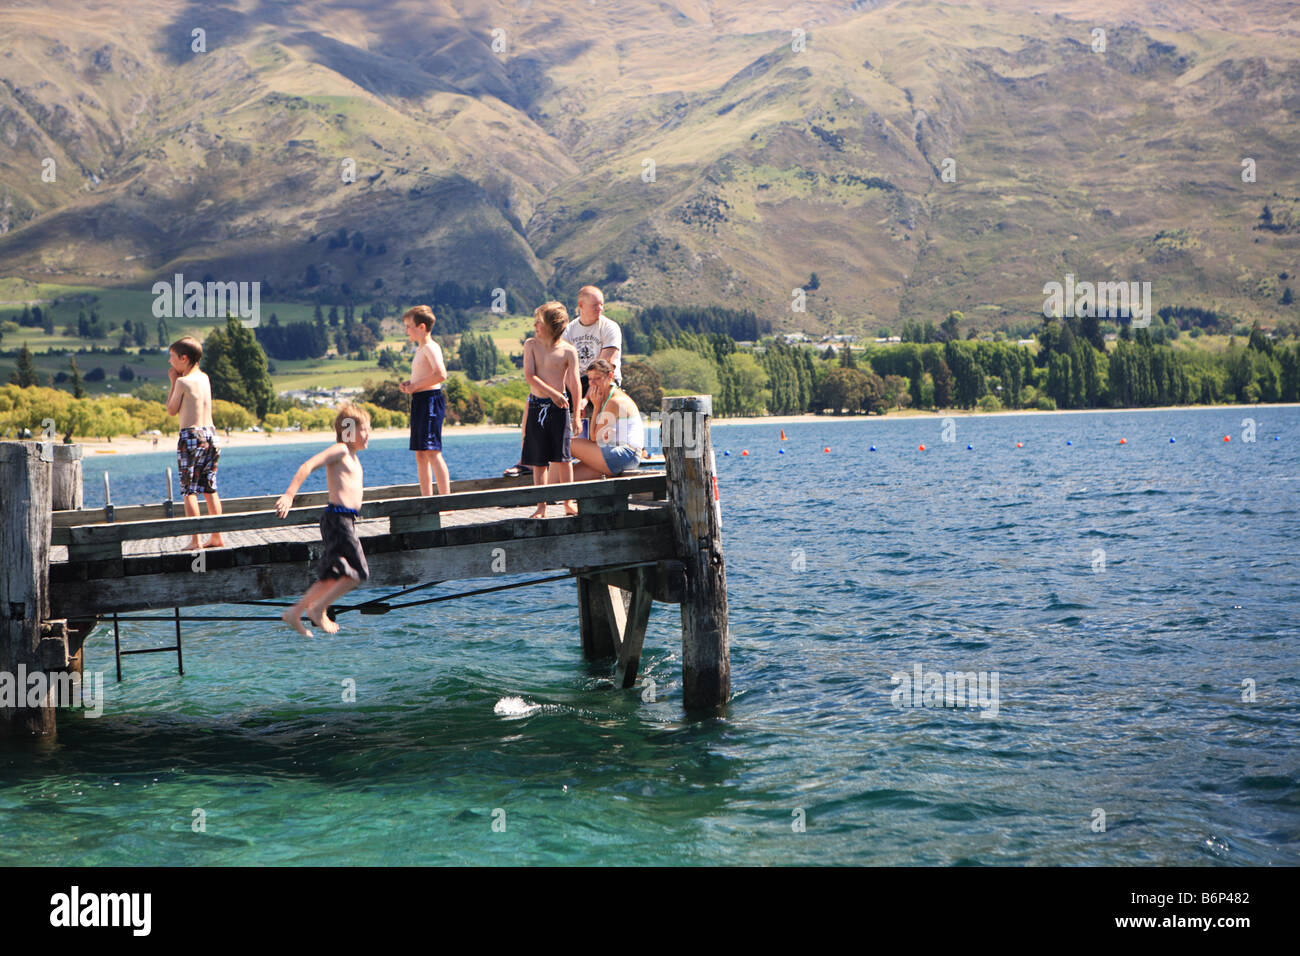 Kids jumping into lake Wanaka, New Zealand Stock Photo